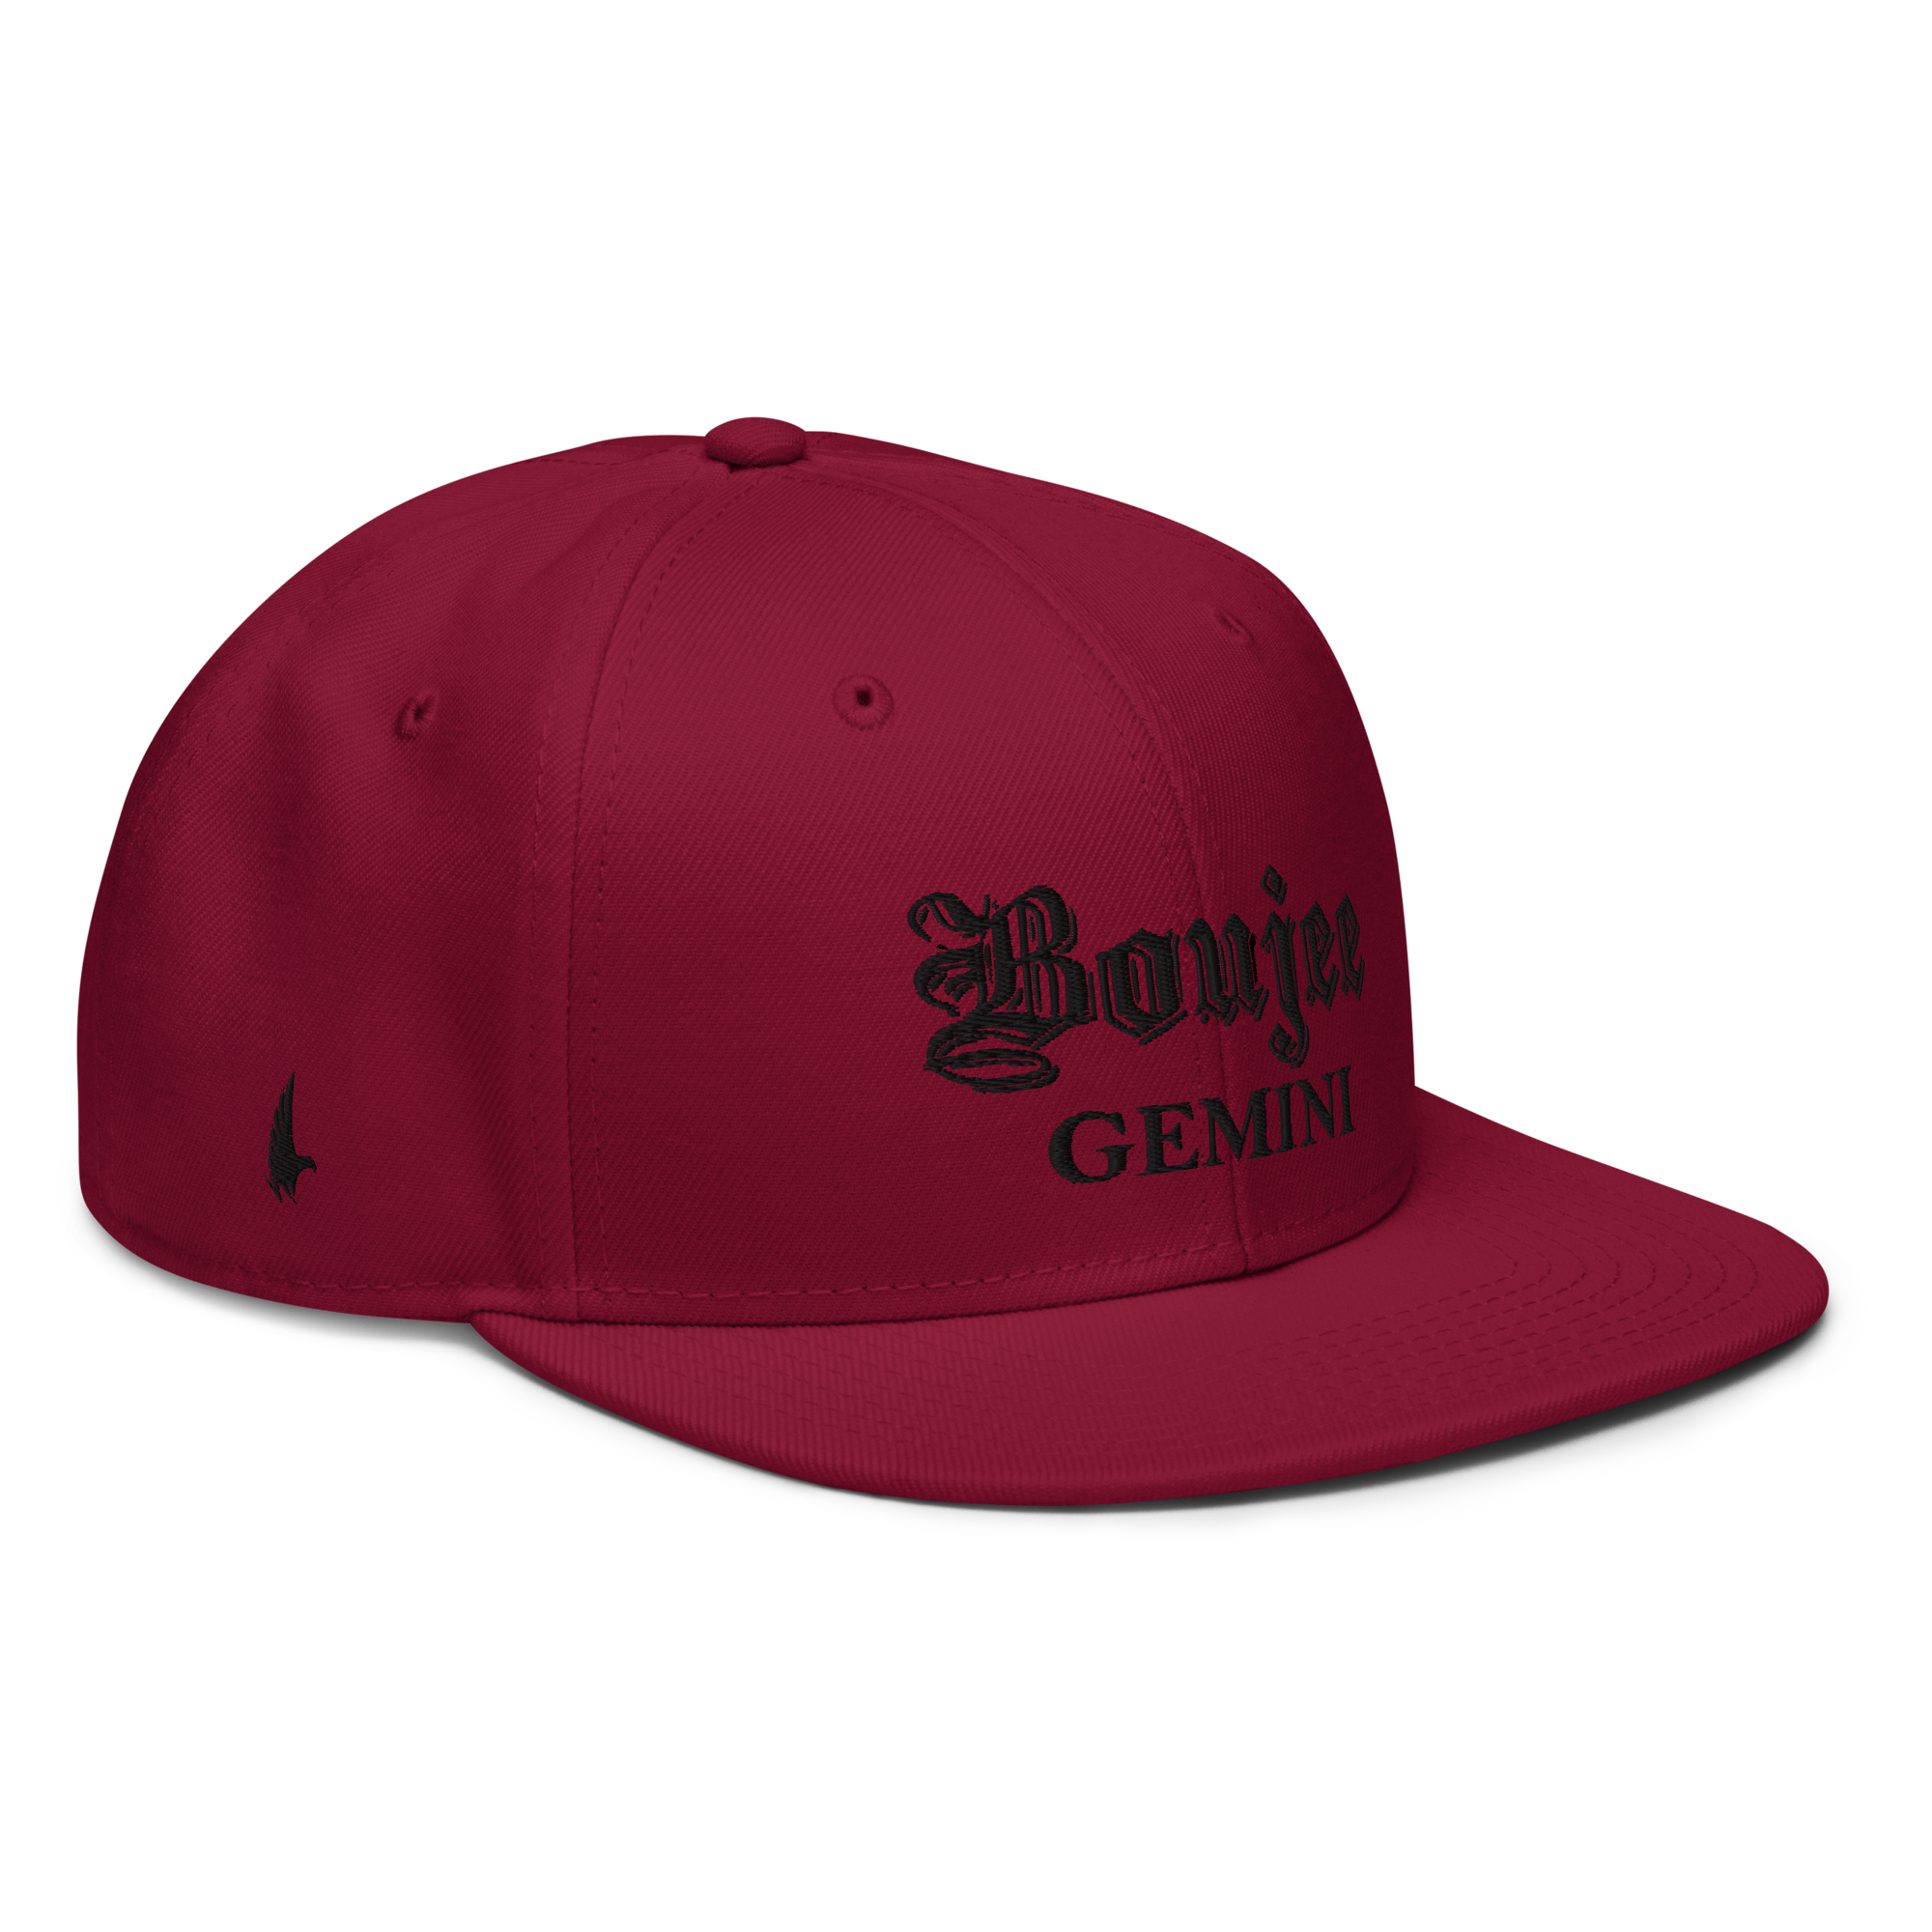 Boujee Gemini Snapback Hat - Maroon/Black - Loyalty Vibes